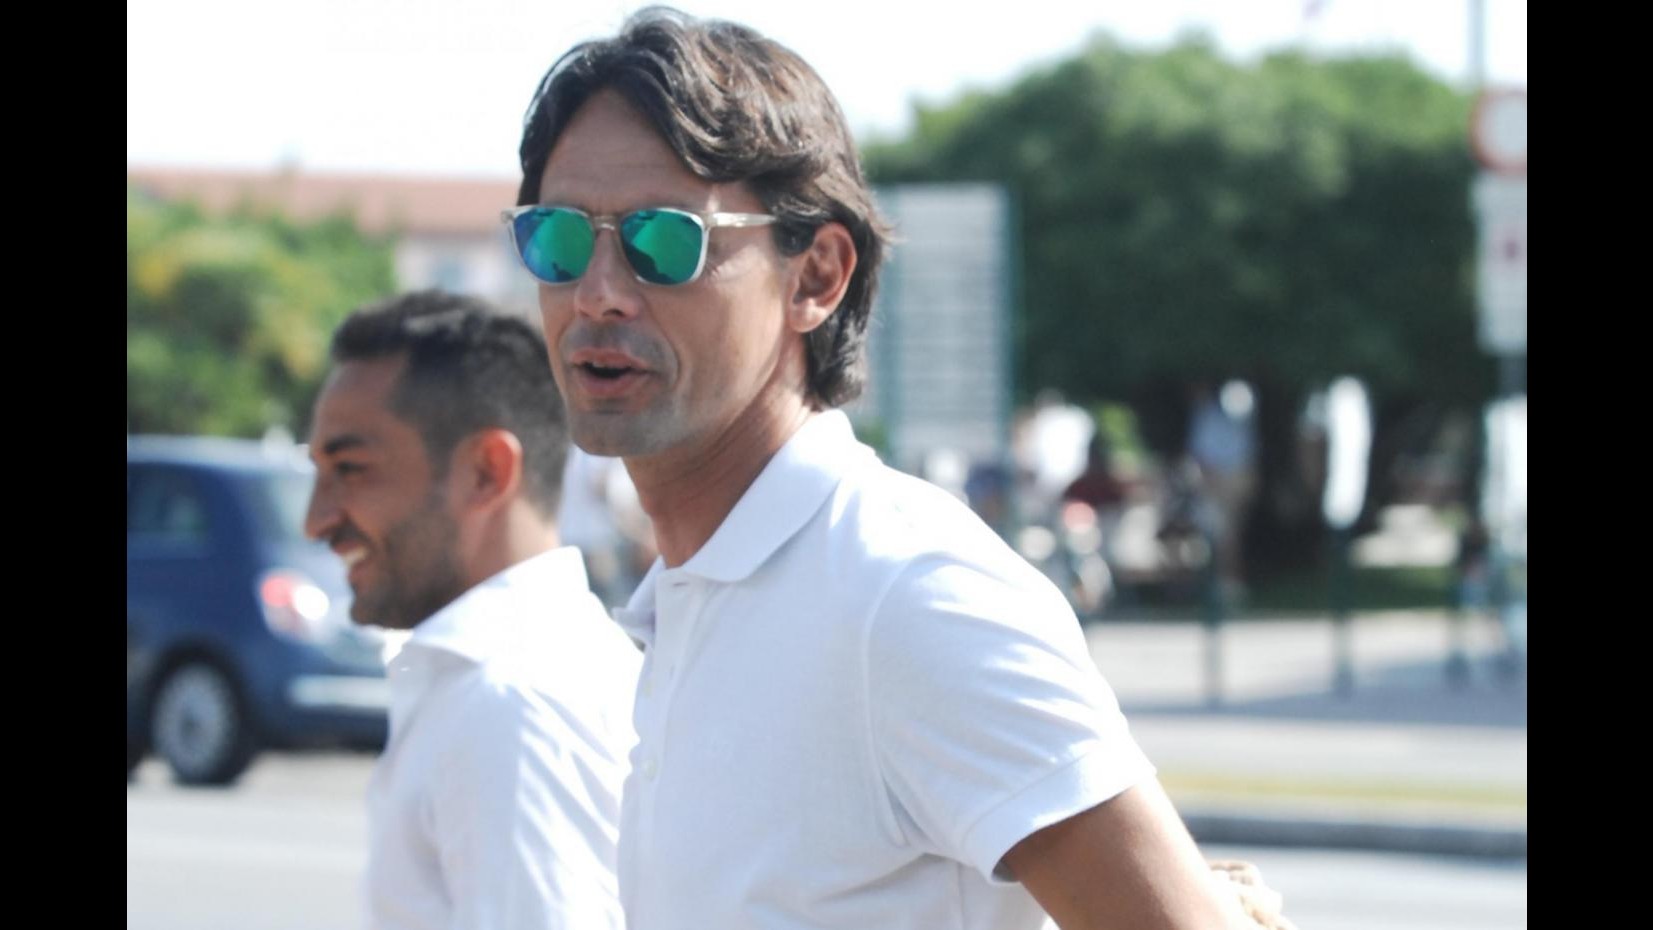 Inzaghi carica Milan: Derby non si gioca, si vince. Nostri tifosi saranno decisivi